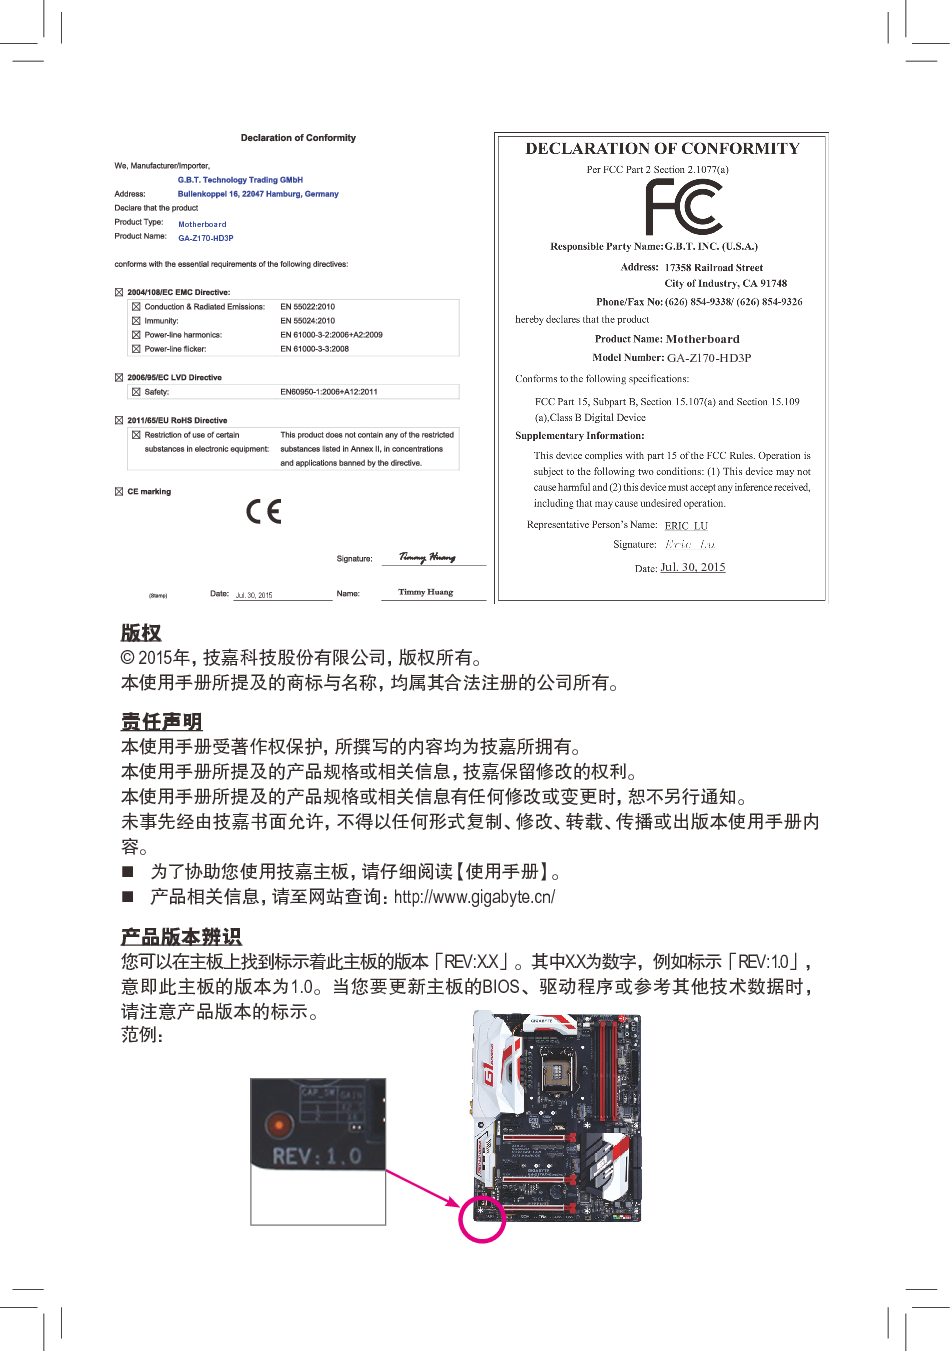 技嘉 Gigabyte GA-Z170-HD3P 使用手册 第1页